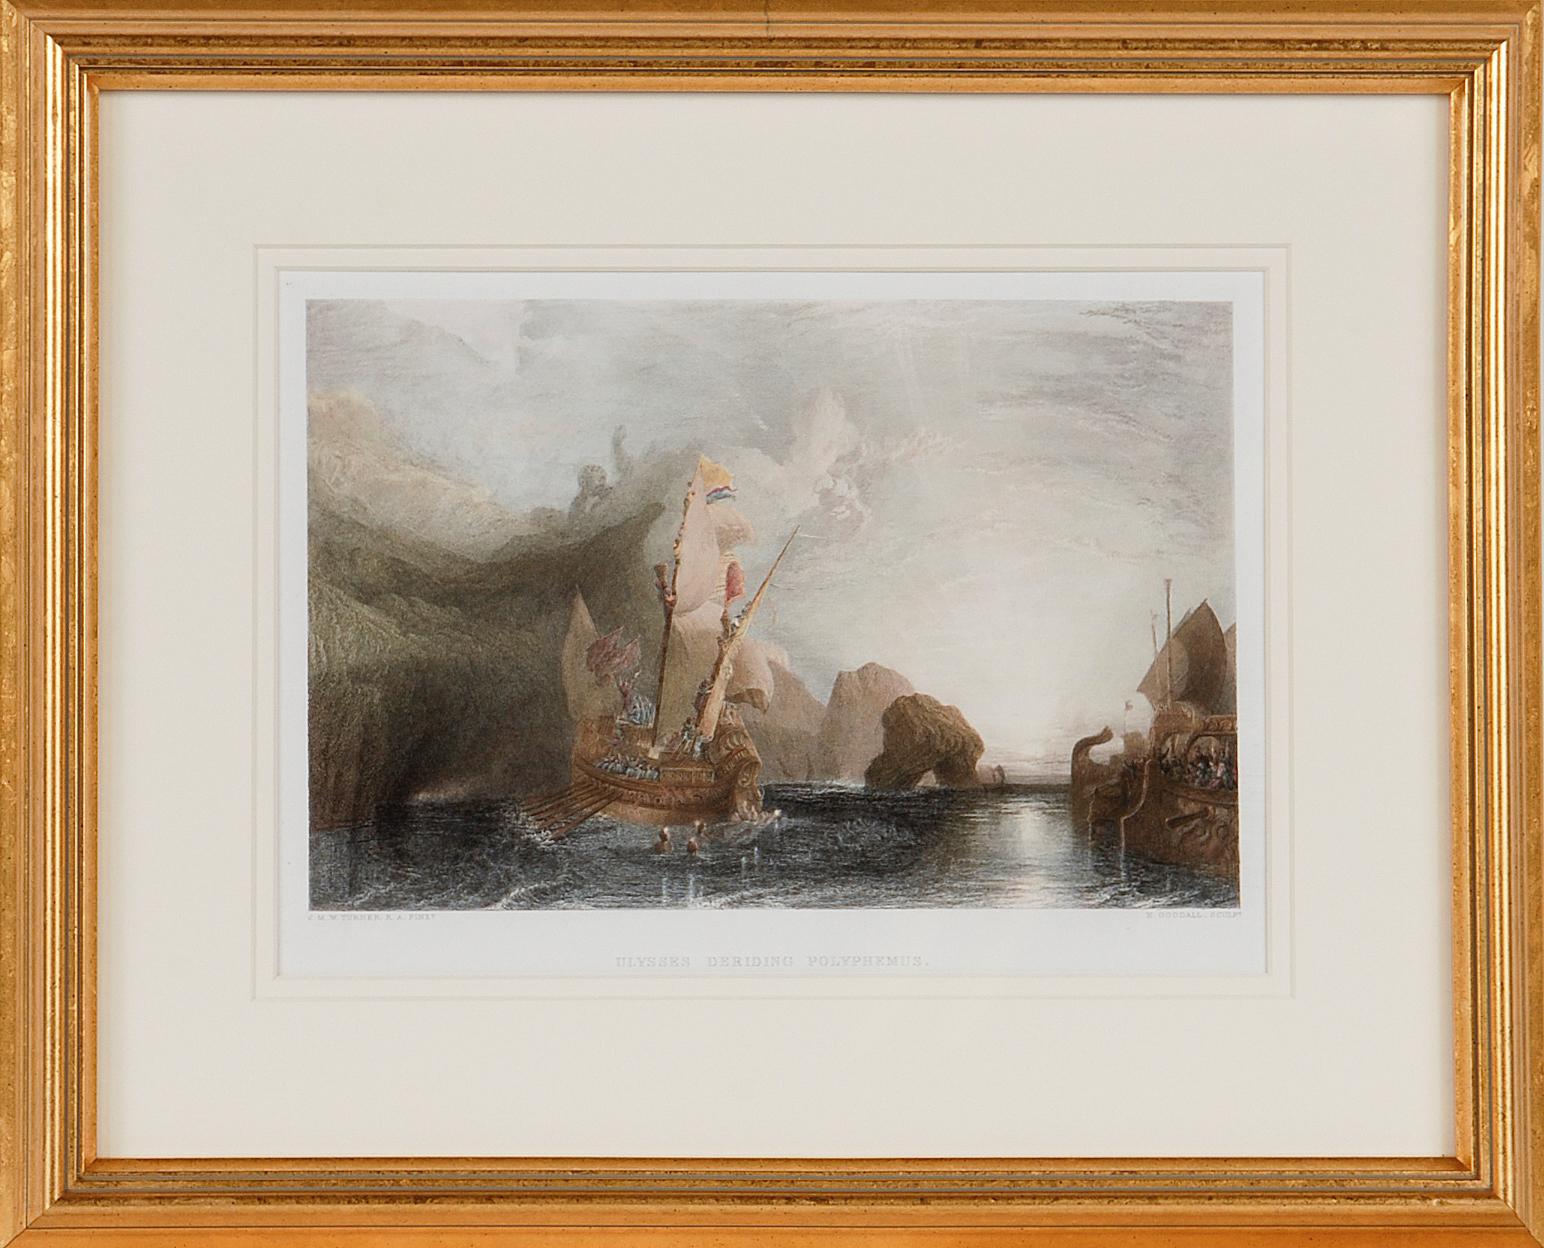 Ulysses Der Leitfaden des Polyphemus: Ein gerahmter Kupferstich nach J. M. W. Turner, 19. Jahrhundert